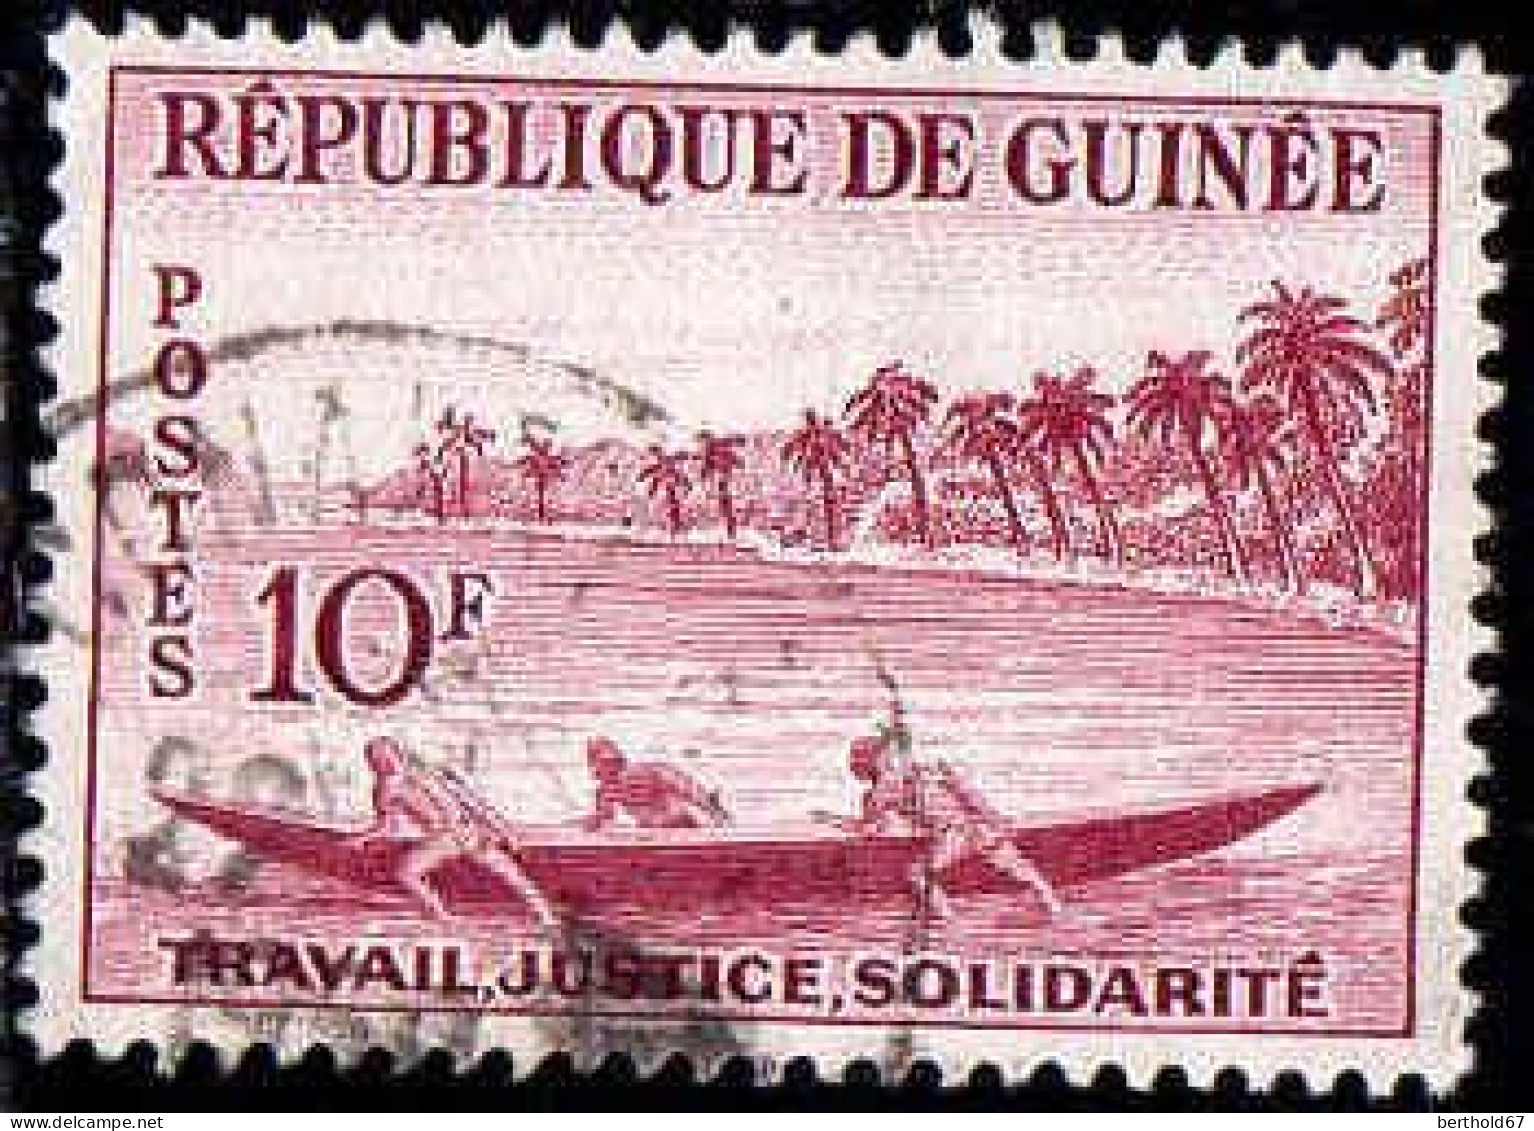 Guinée (Rep) Poste Obl Yv:  12 Mi:12 Palmiers & Bateau (Beau Cachet Rond) - Ships